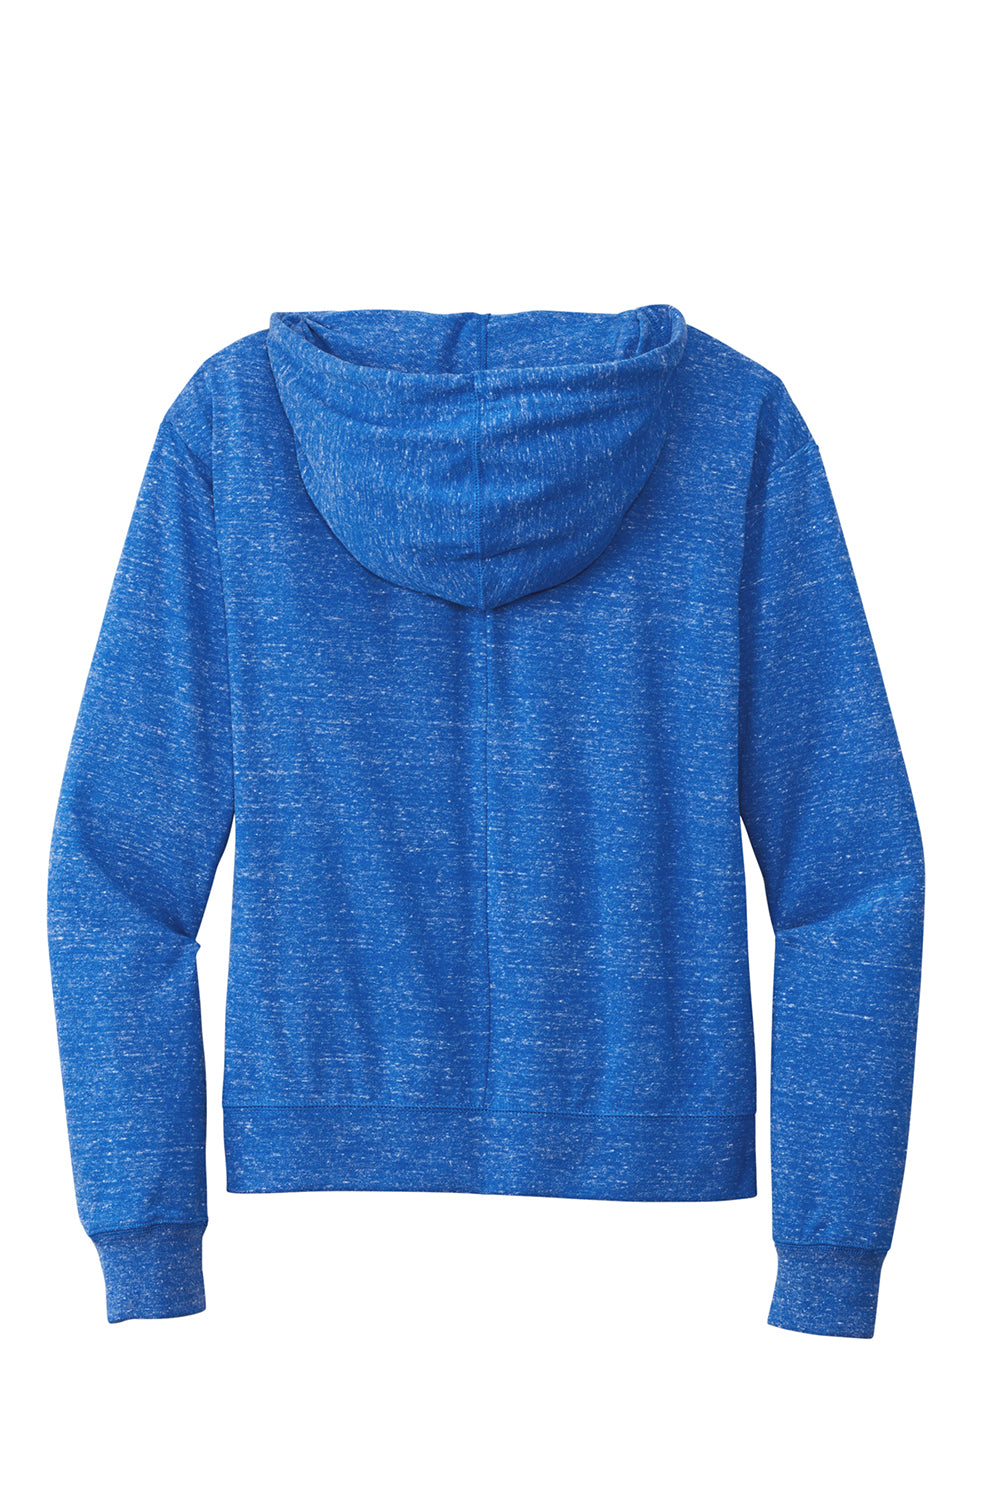 Nike CN9402 Womens Gym Vintage Full Zip Hooded Sweatshirt Hoodie Team Royal Blue Flat Back